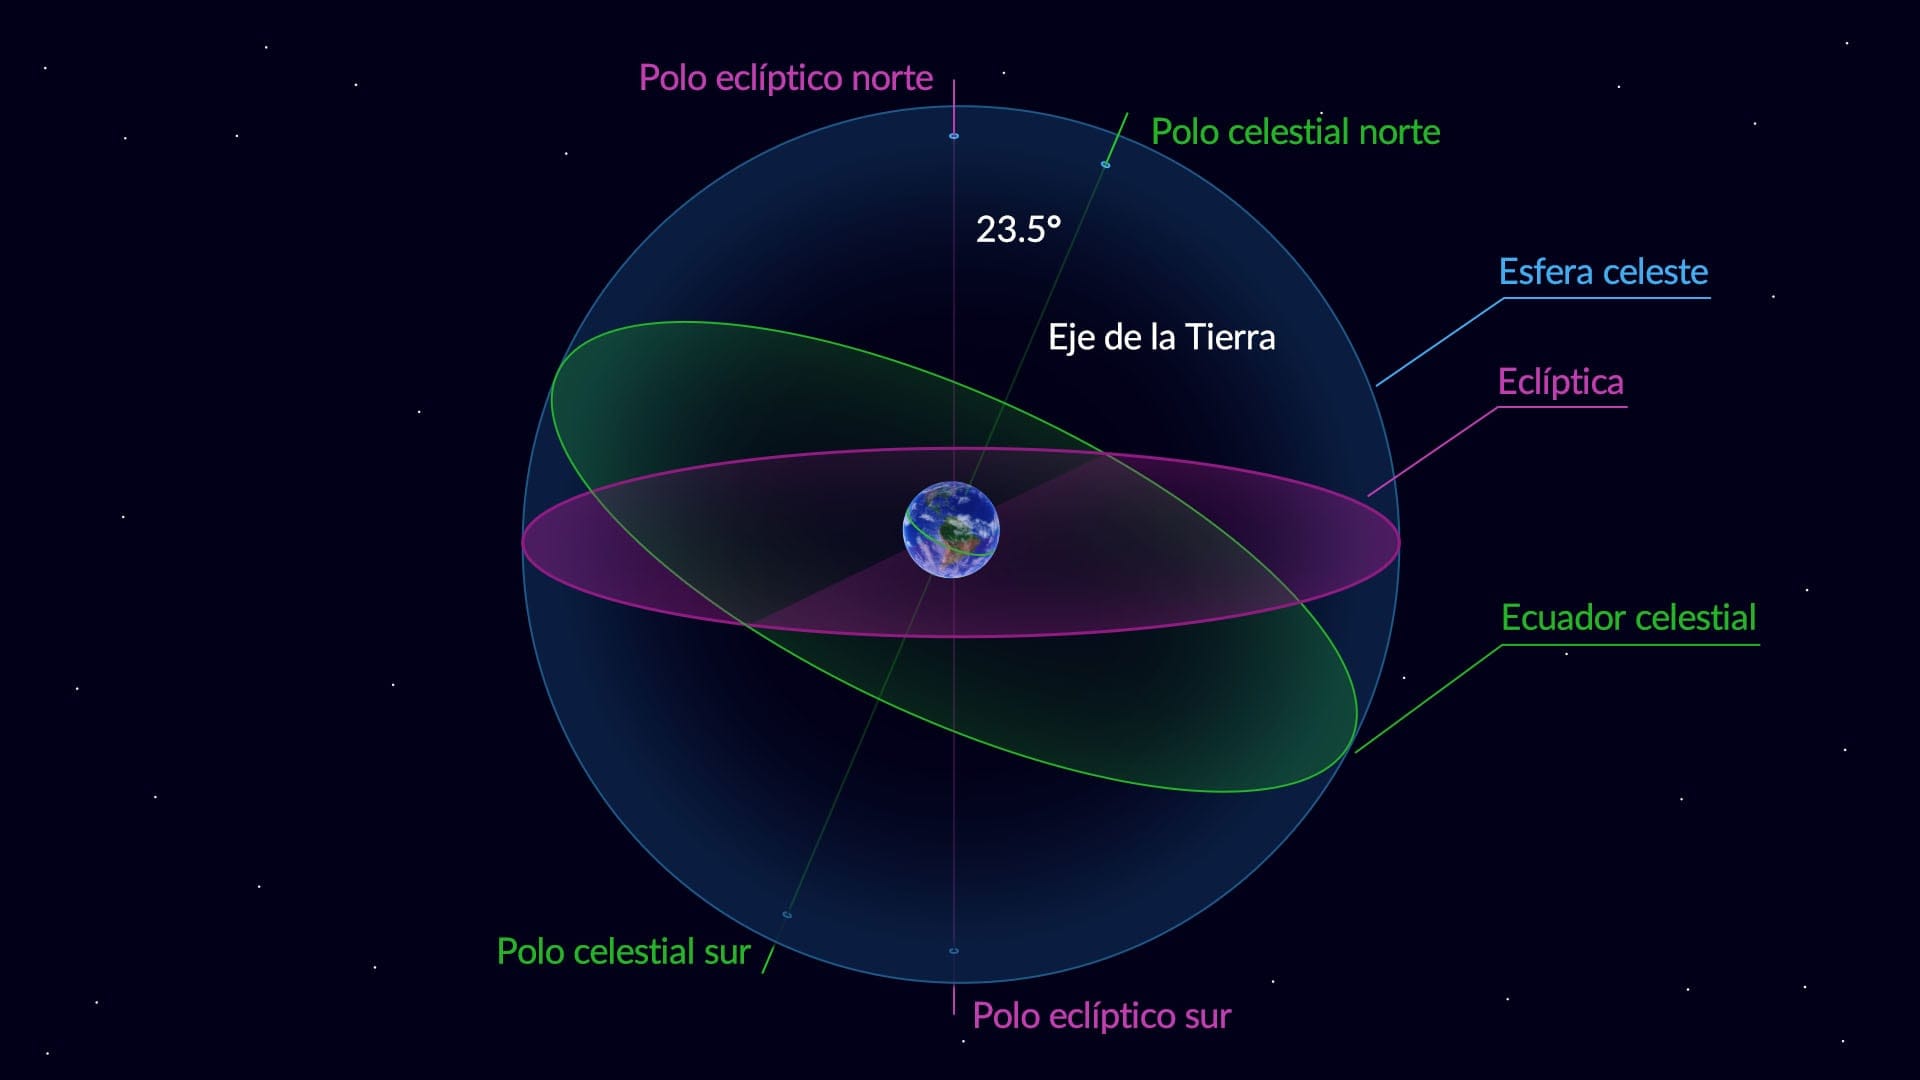 El ecuador celestial de la Tierra y la eclíptica